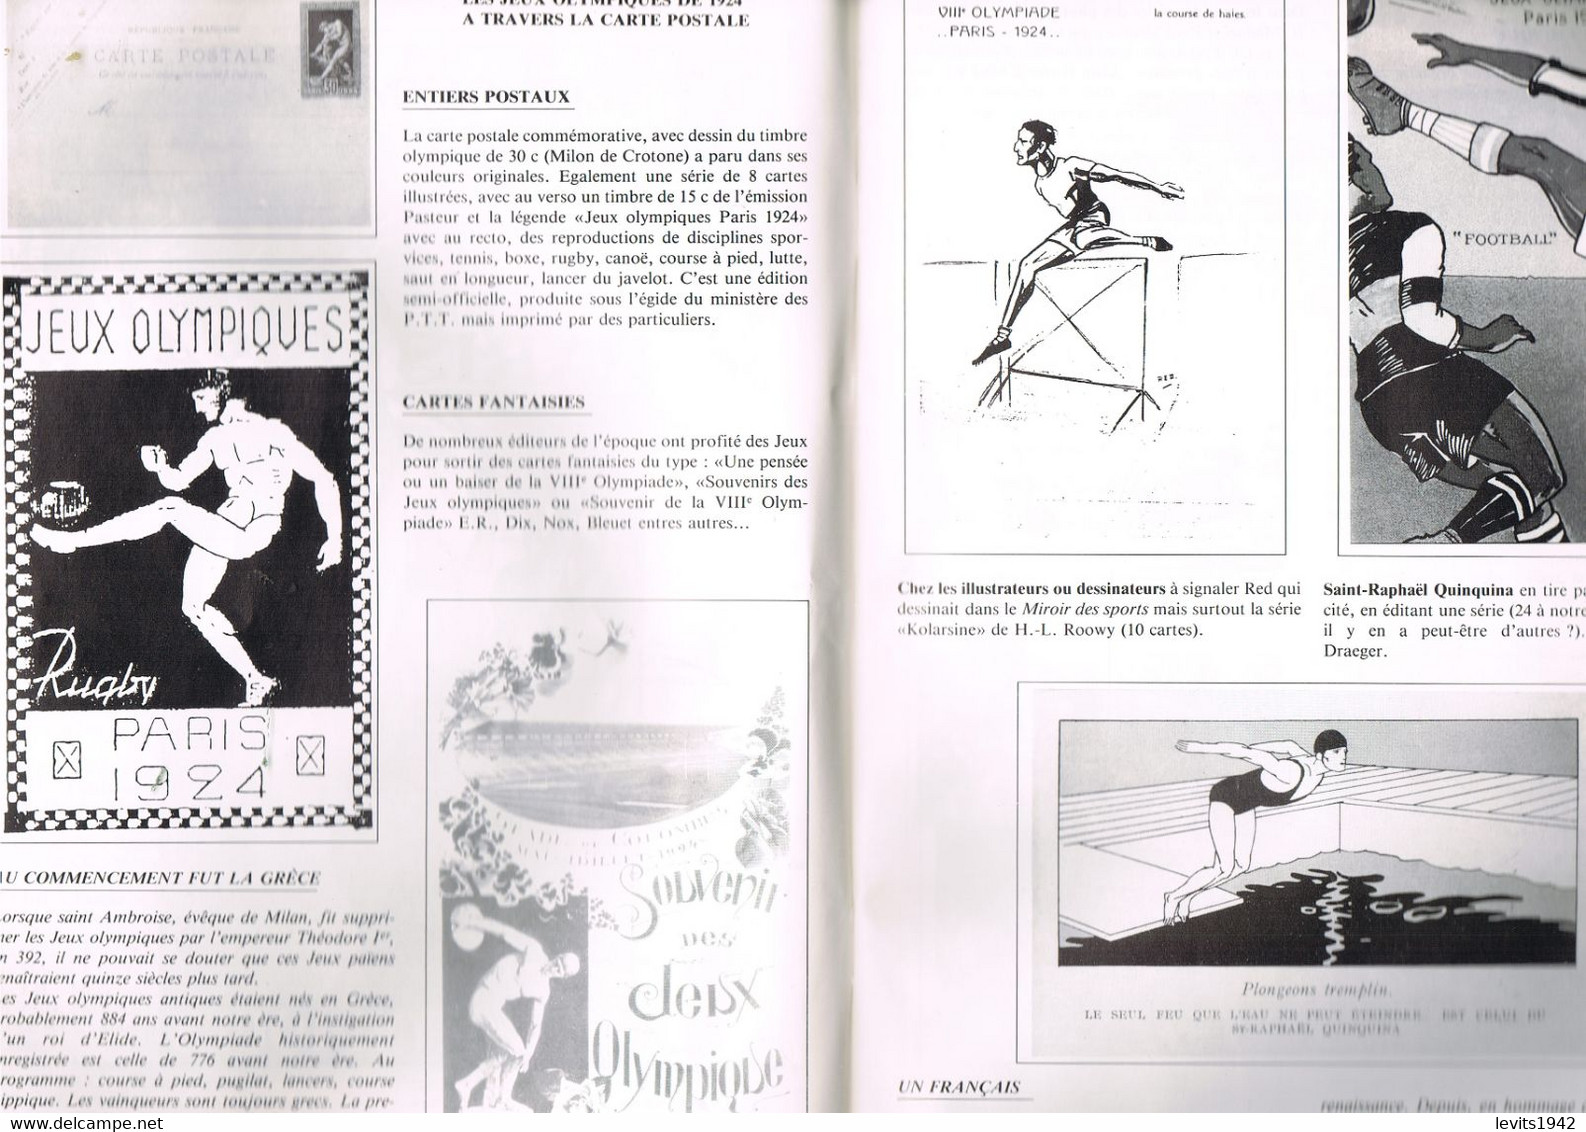 REVUE CARTE POSTALE ET COLLECTION 1988 - ARTICLE SUR LES JEUX OLYMPIQUES DE 1924 - - Livres